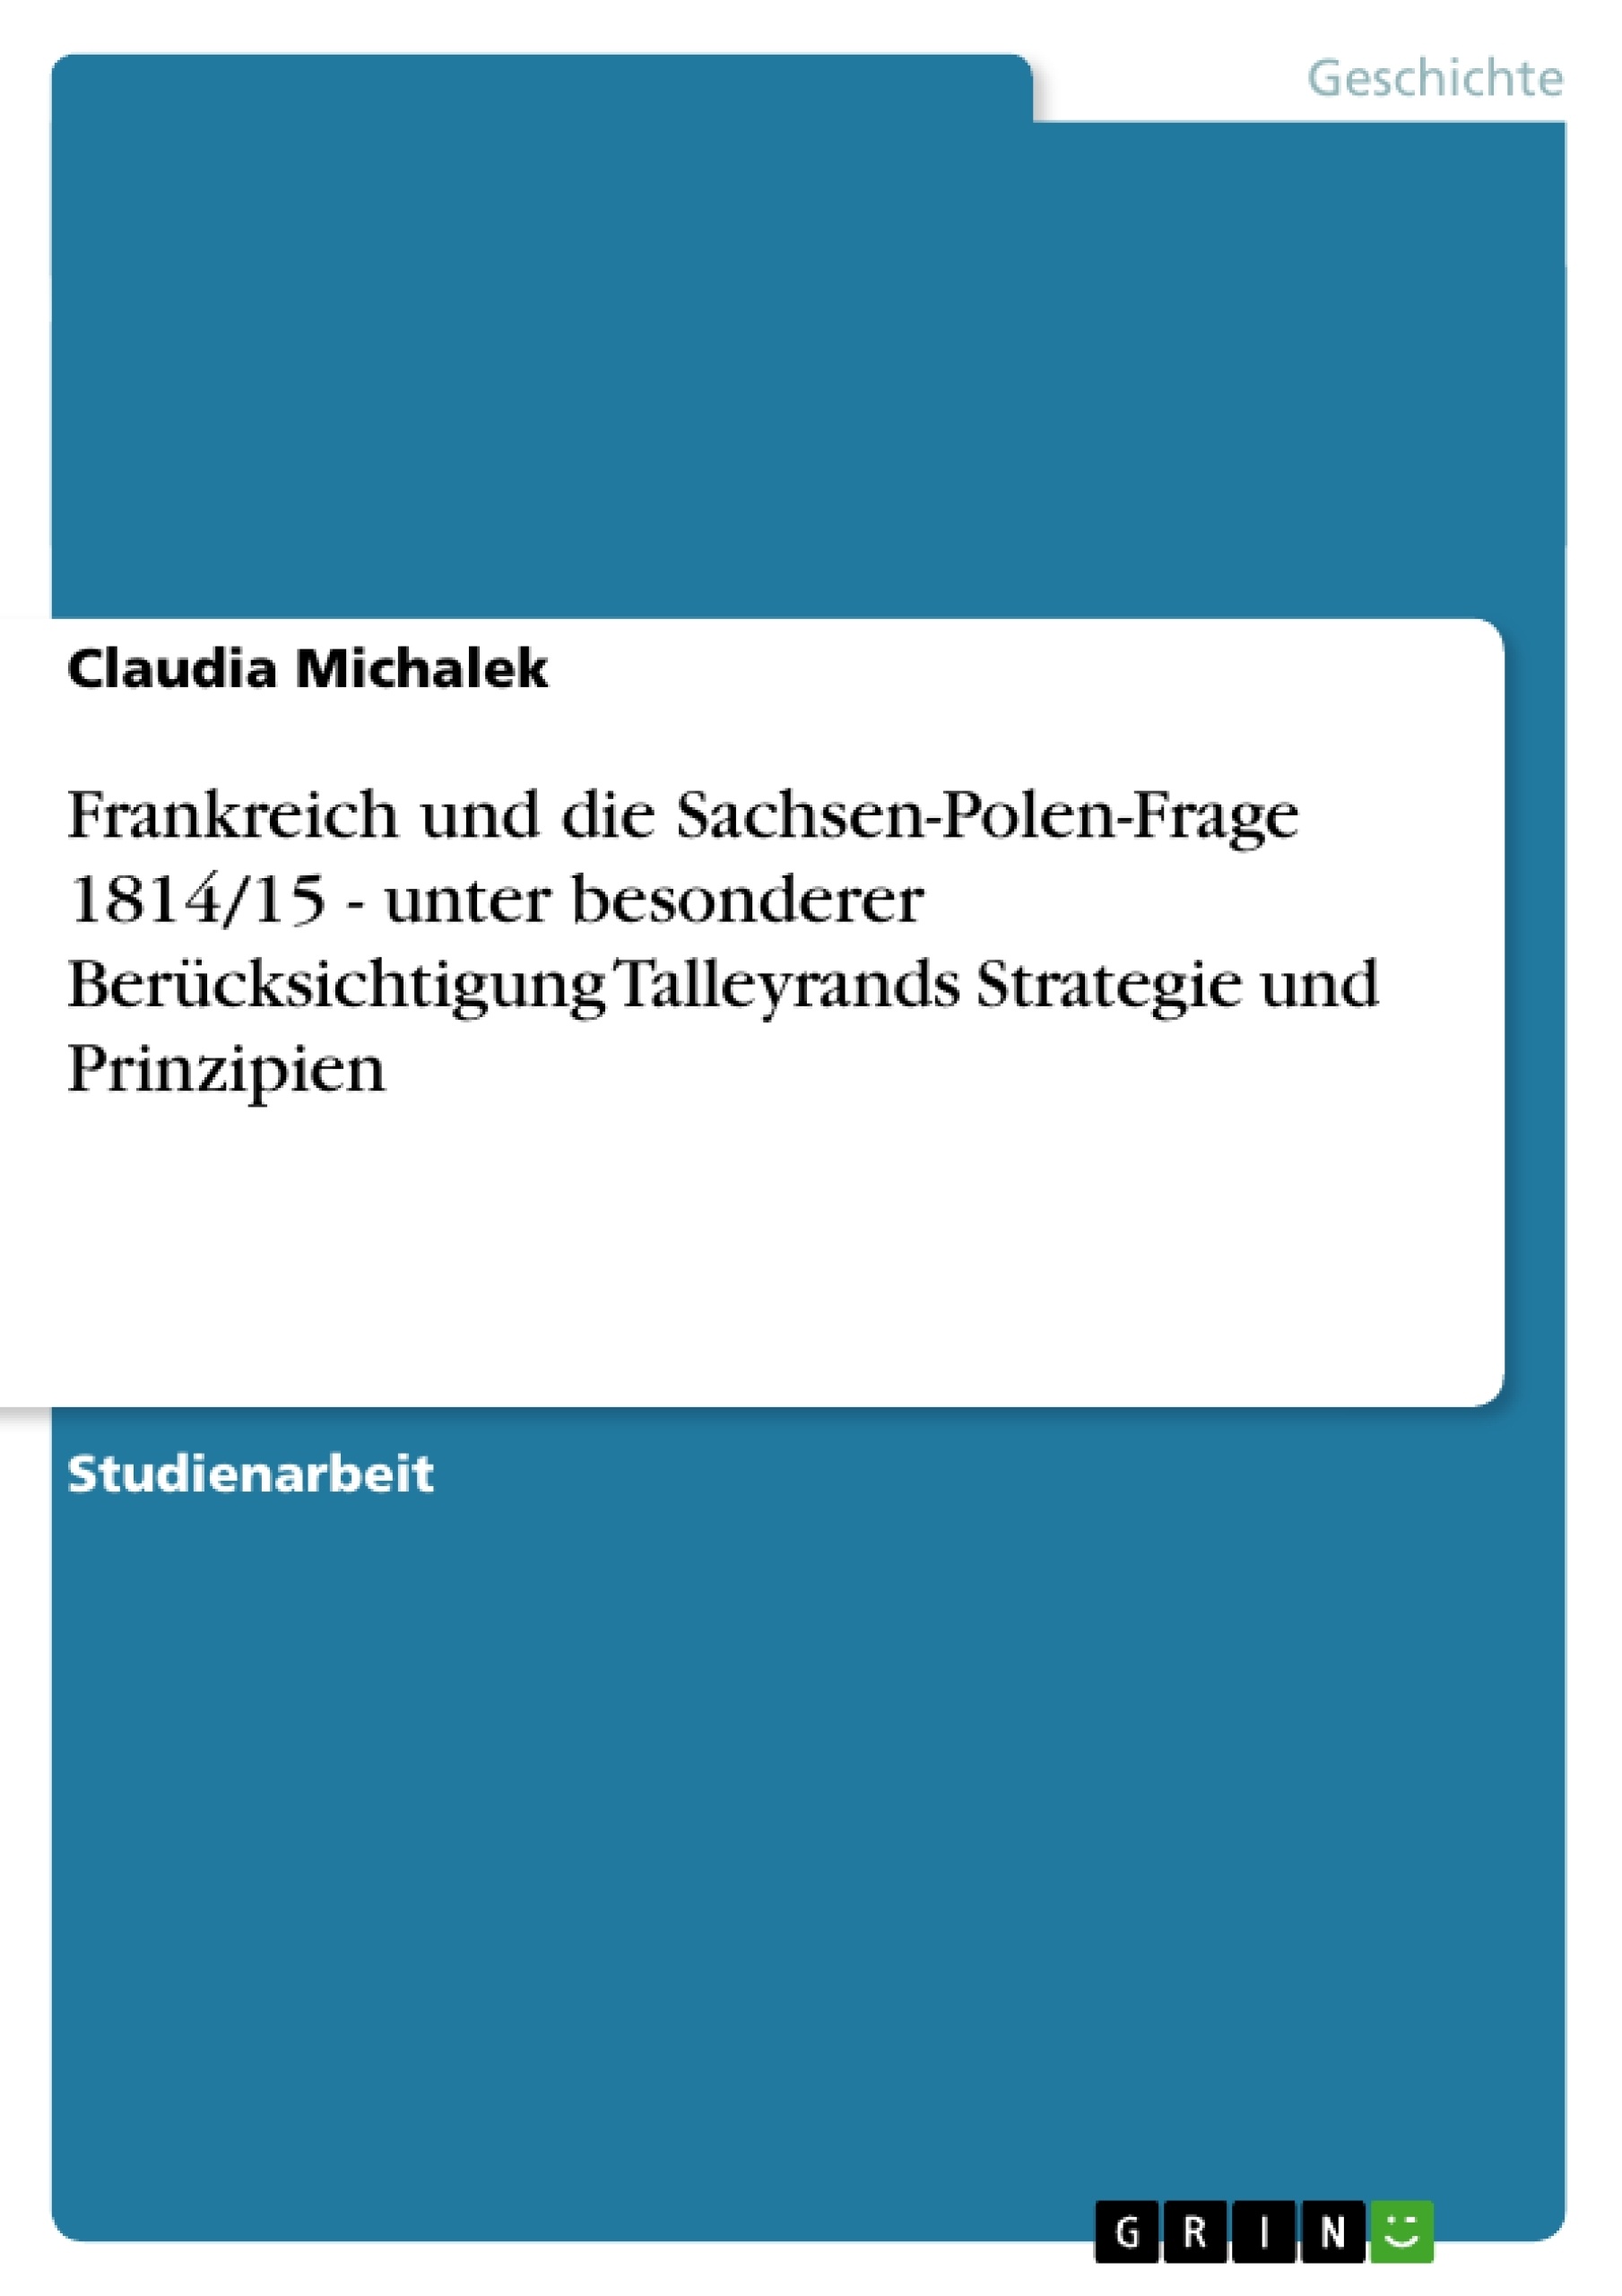 Title: Frankreich und die Sachsen-Polen-Frage 1814/15 - unter besonderer Berücksichtigung Talleyrands Strategie und Prinzipien